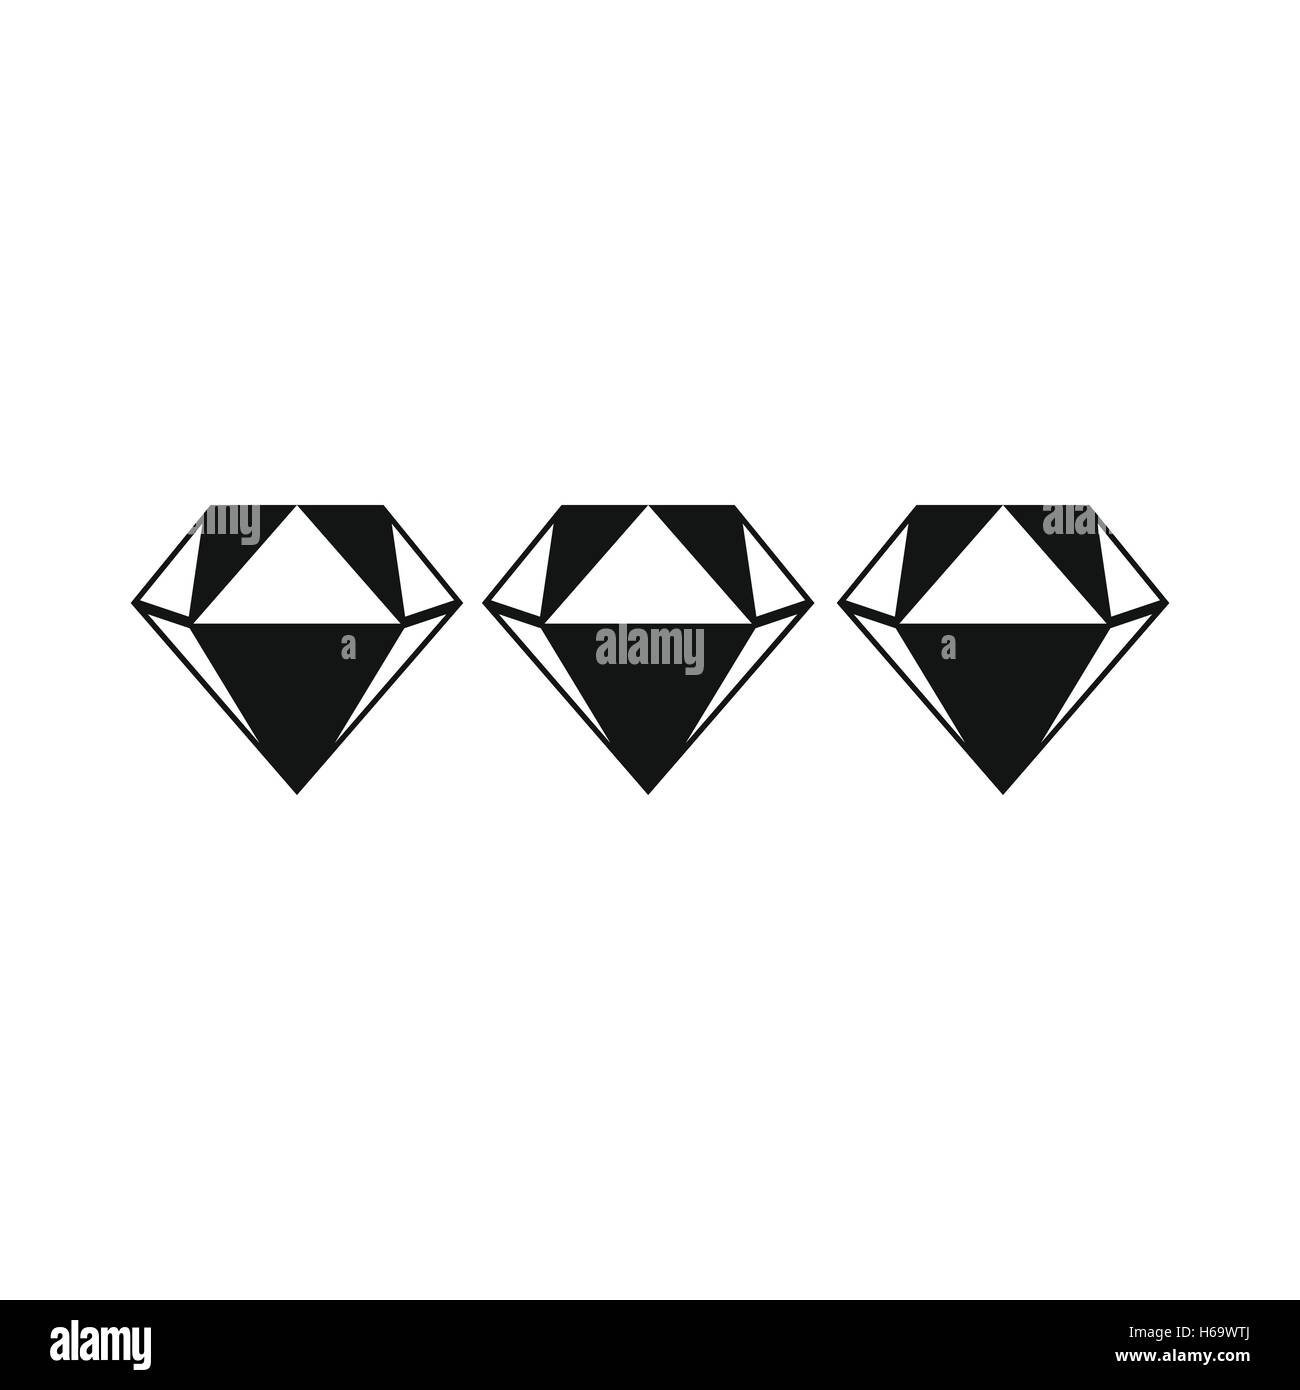 Three diamonds icon Stock Vector Image & Art - Alamy